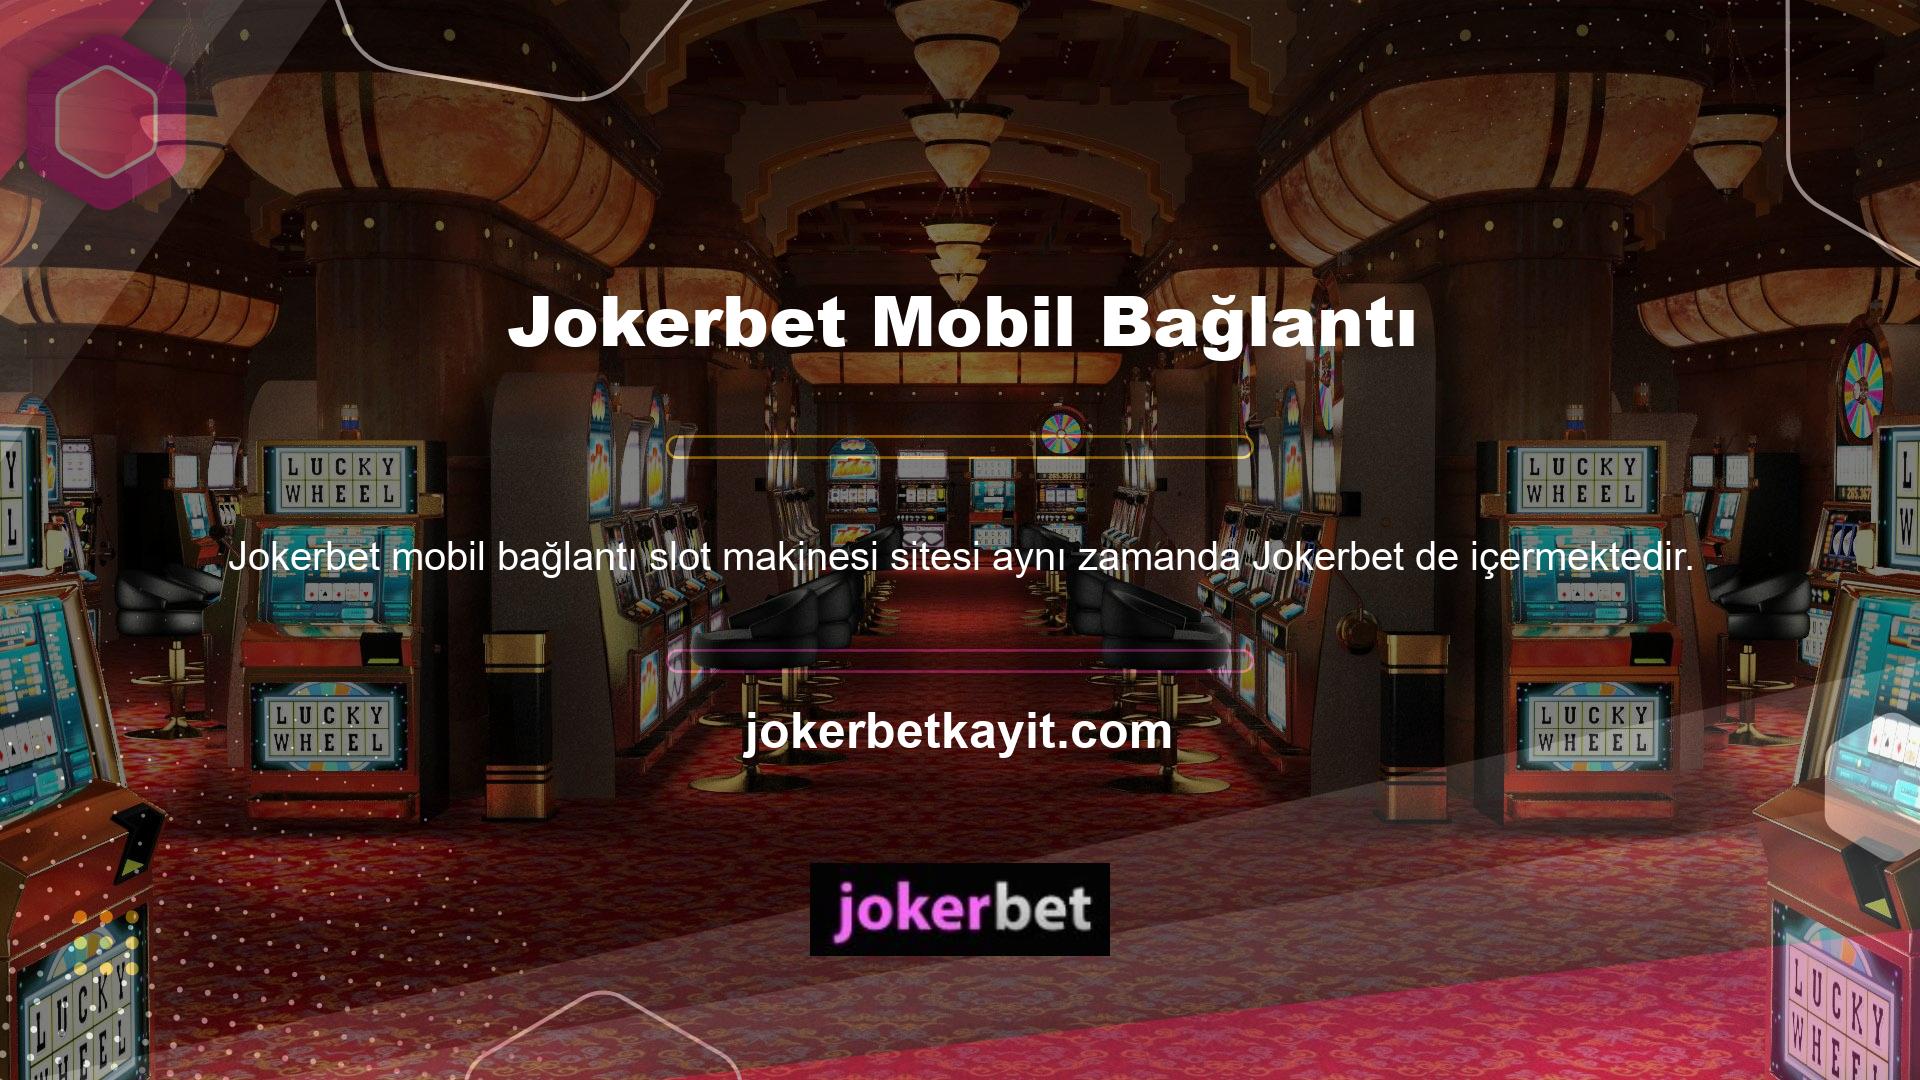 Jokerbet, Türk toplumunun en ünlü ve saygın casino sitelerinden biridir